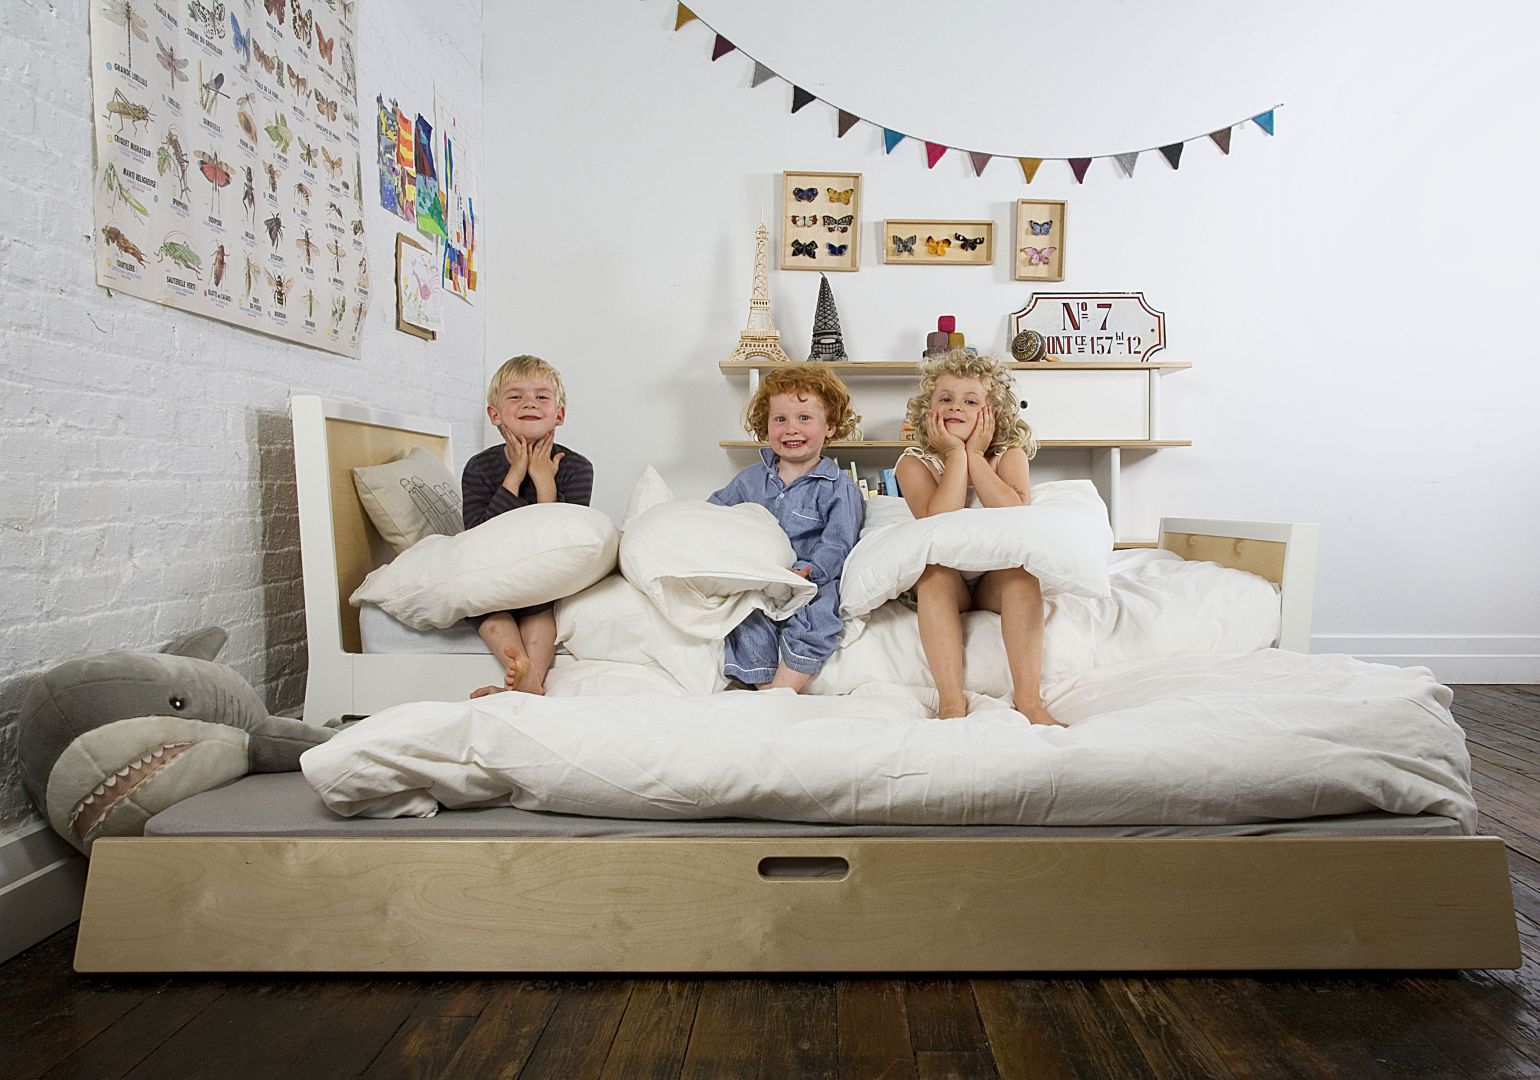 Łóżko Oeuf Trundle jest wygodnym miejscem do spania dla dzieci od 4 roku życia. Posiada wysuwany materac, dzięki czemu idealnie sprawdza się w sytuacji, kiedy rodzeństwo dzieli jeden pokój. Fot. Modern Kids